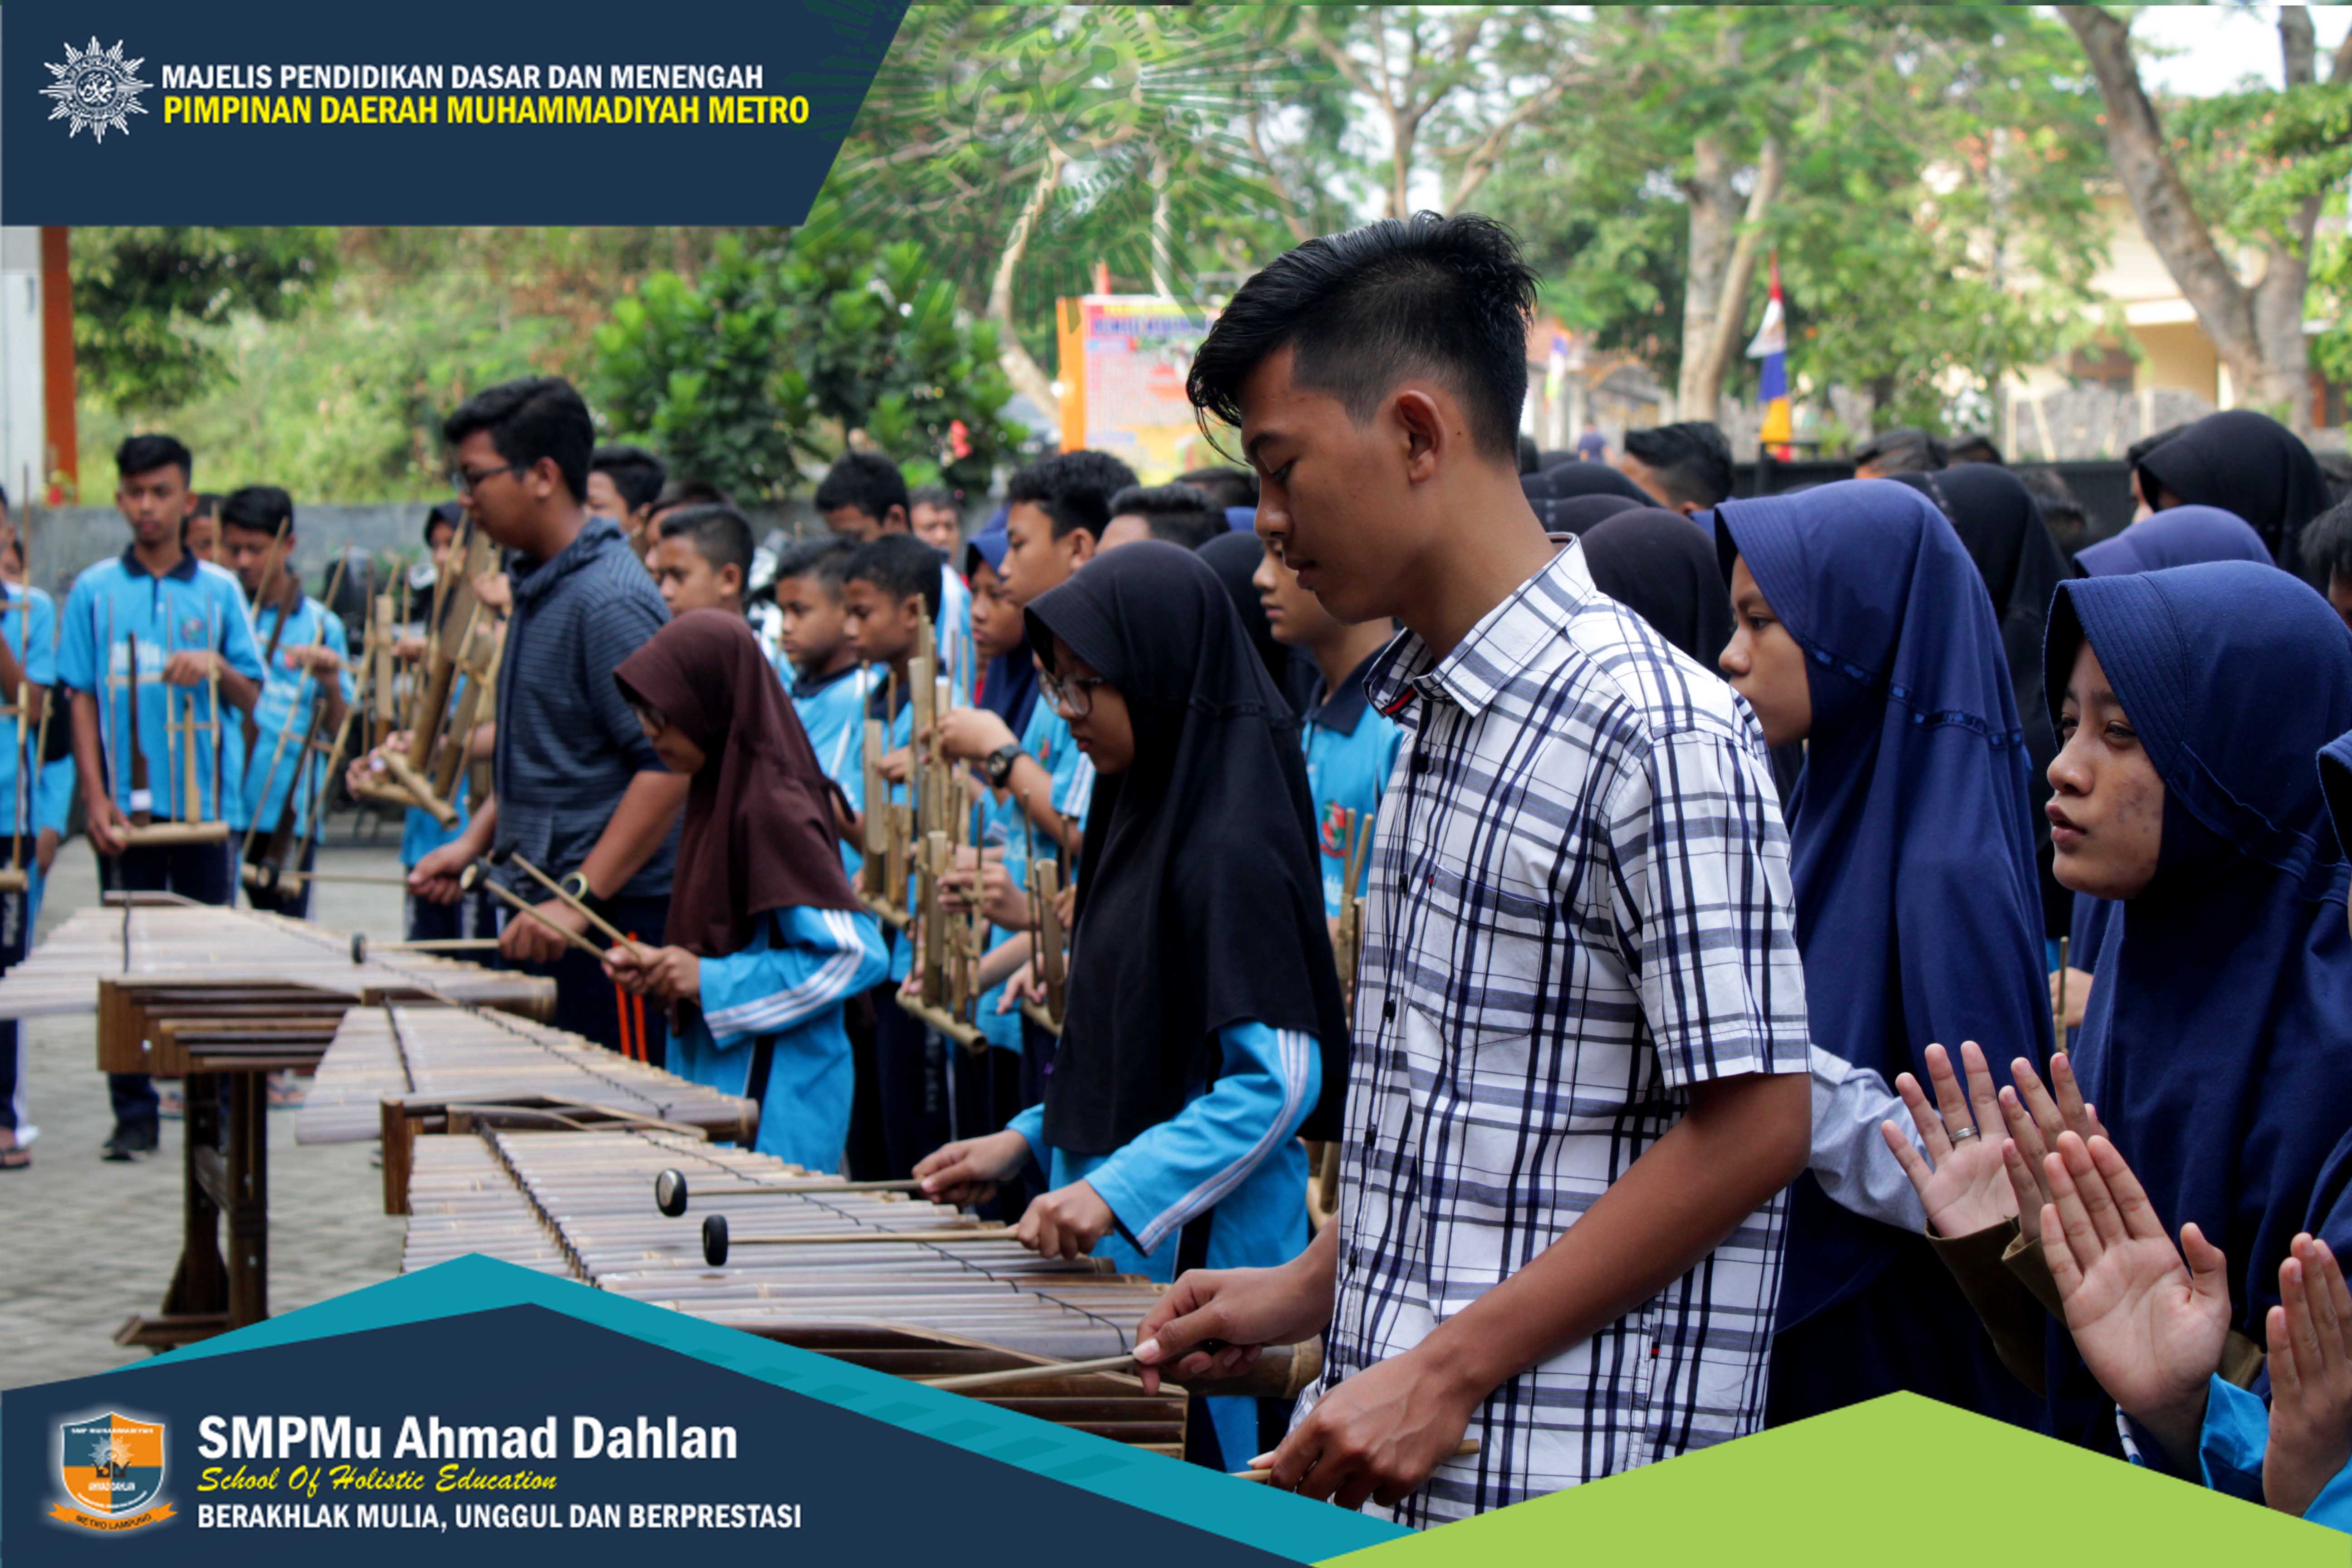 SMP MU Ahmad Dahlan Siapkan Aubade HUT RI ke-73 di Kota Metro